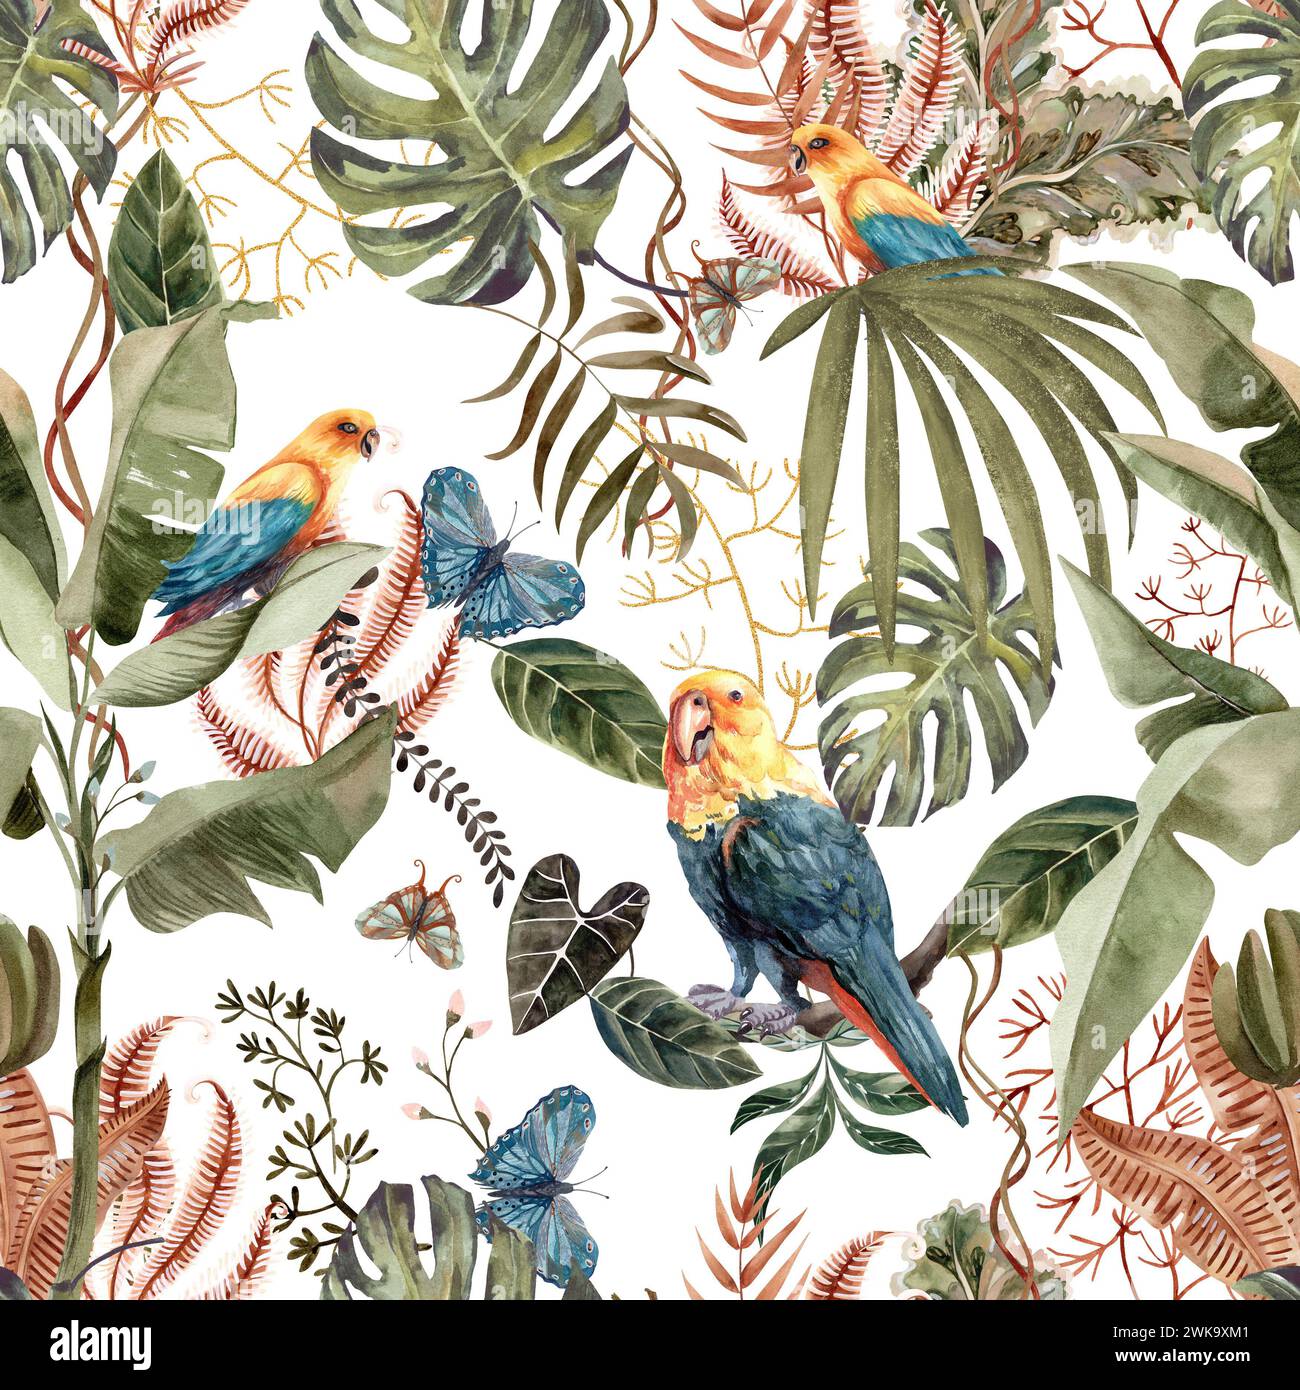 Wunderschönes Muster mit schönen Aquarellpapageien und tropischen Blättern, die für das Design von Souvenirs, Postkarten, Plakaten und Einladungen zeichnen. Stockfoto